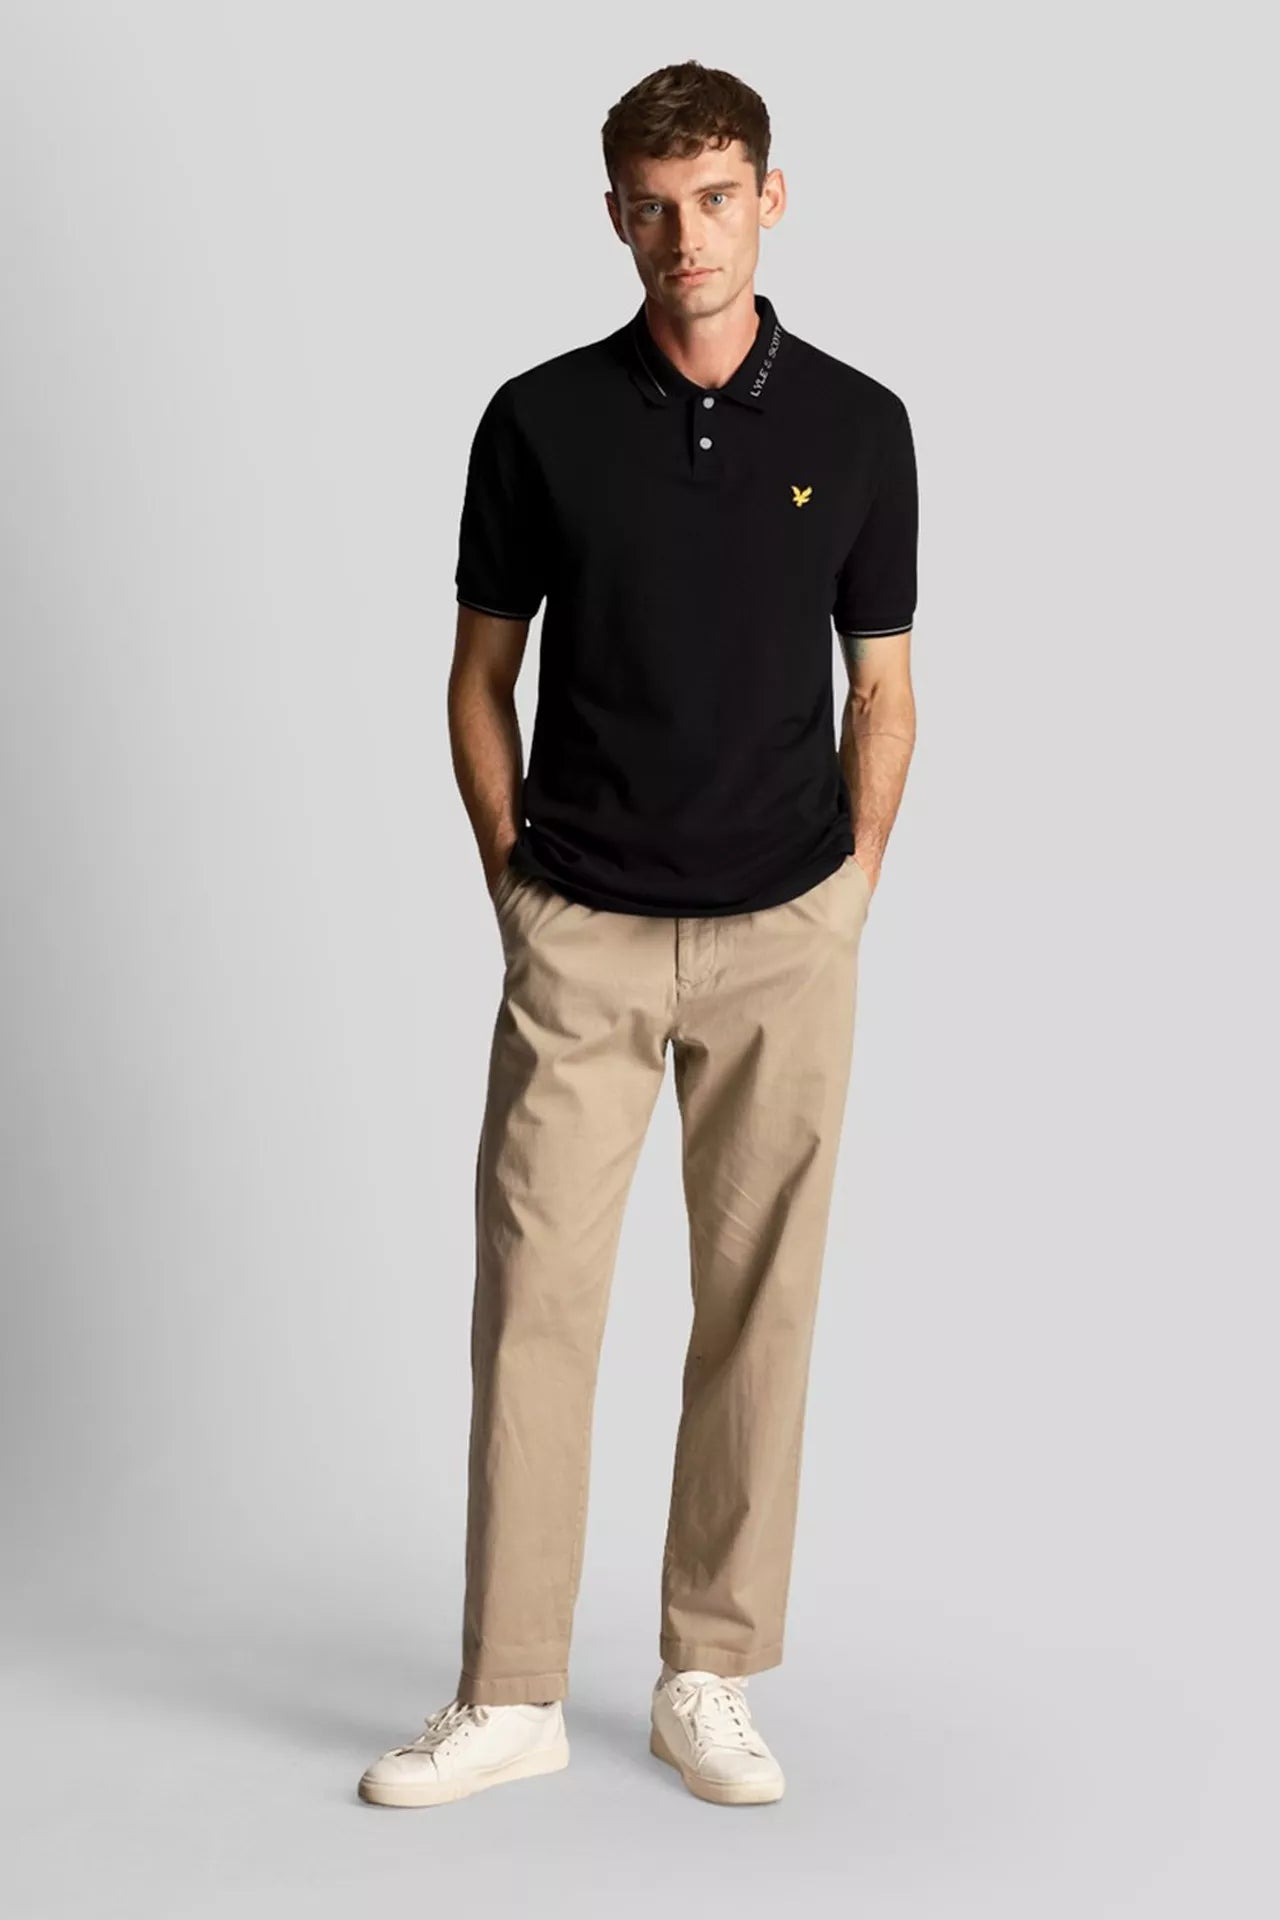 Lyle & Scott - Branded Ringer Polo Shirt Black